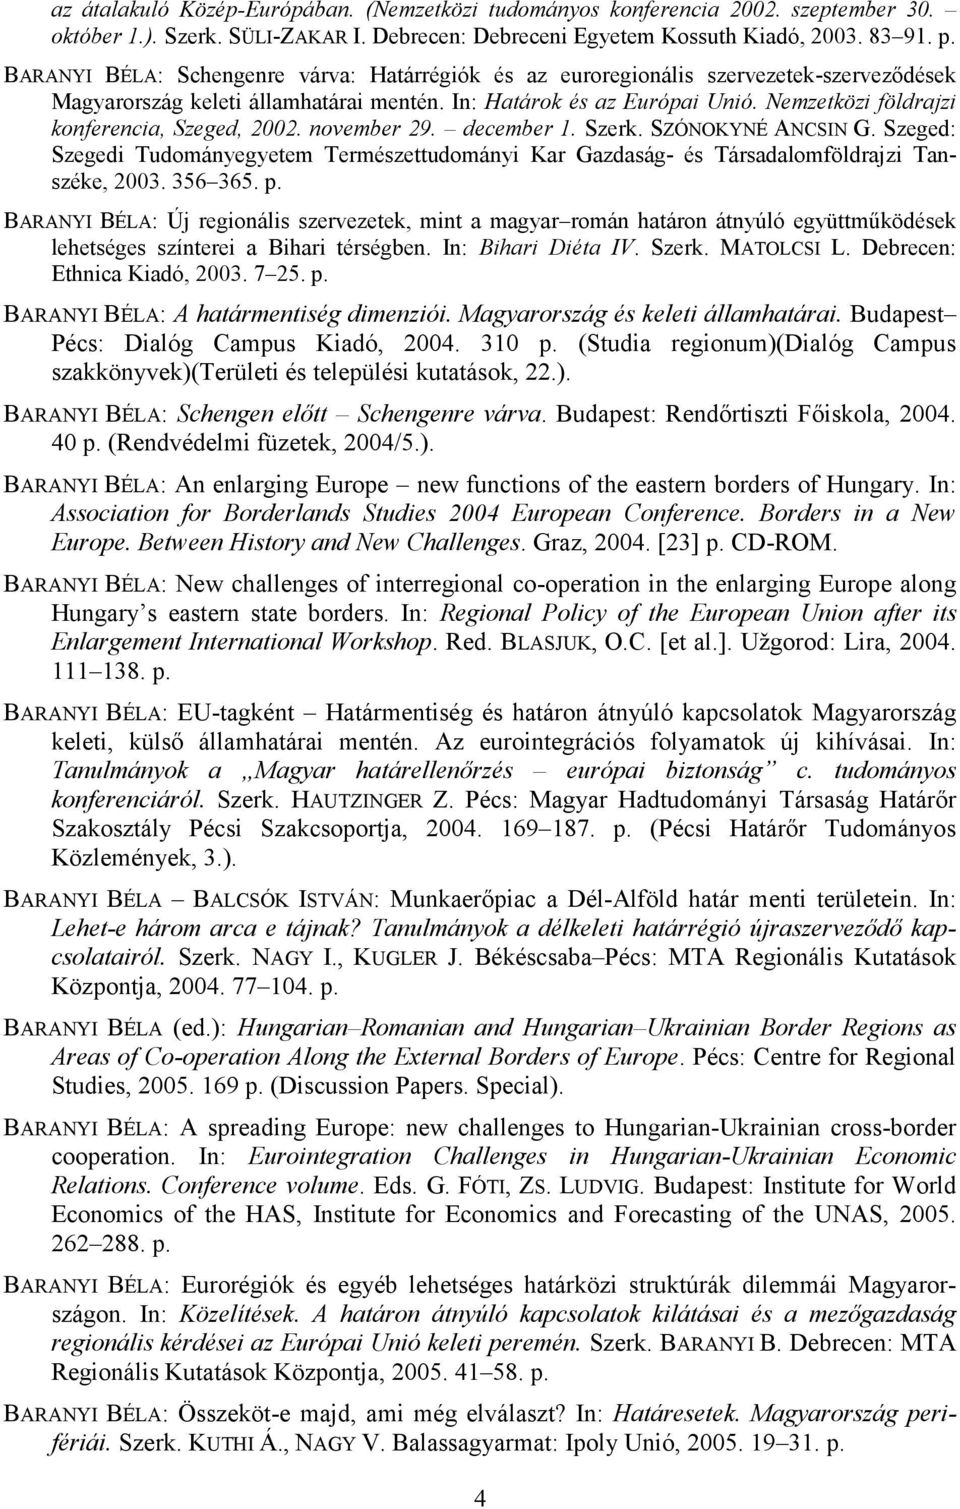 Nemzetközi földrajzi konferencia, Szeged, 2002. november 29. december 1. Szerk. SZÓNOKYNÉ ANCSIN G.